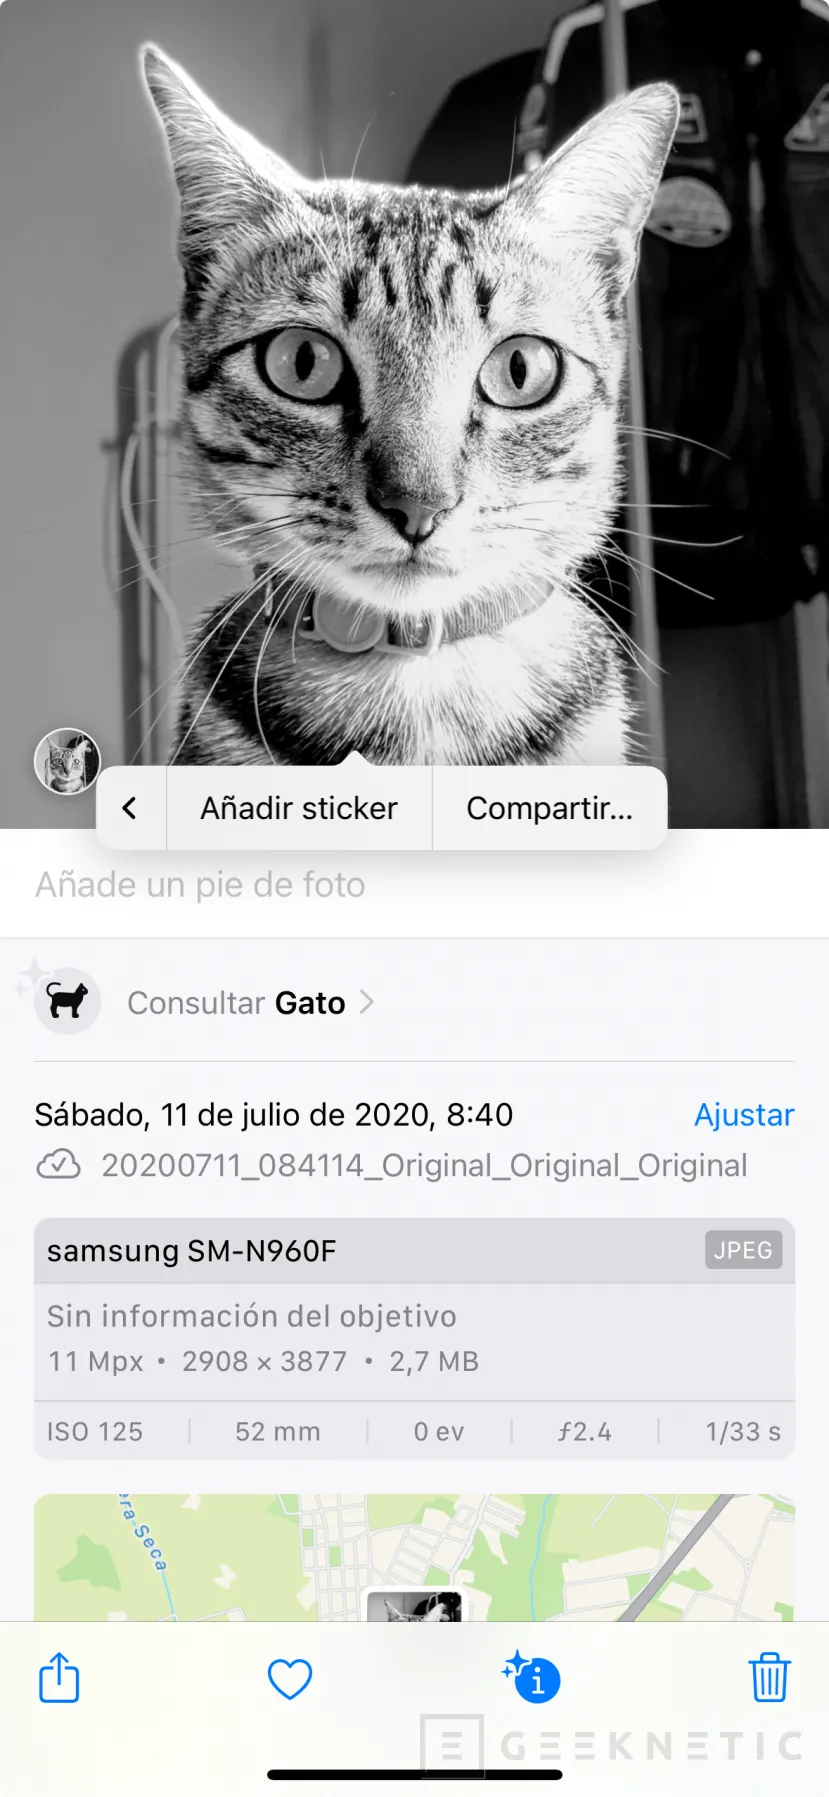 Geeknetic iOS 17 para iPhone. Todas las Novedades y Funciones 6